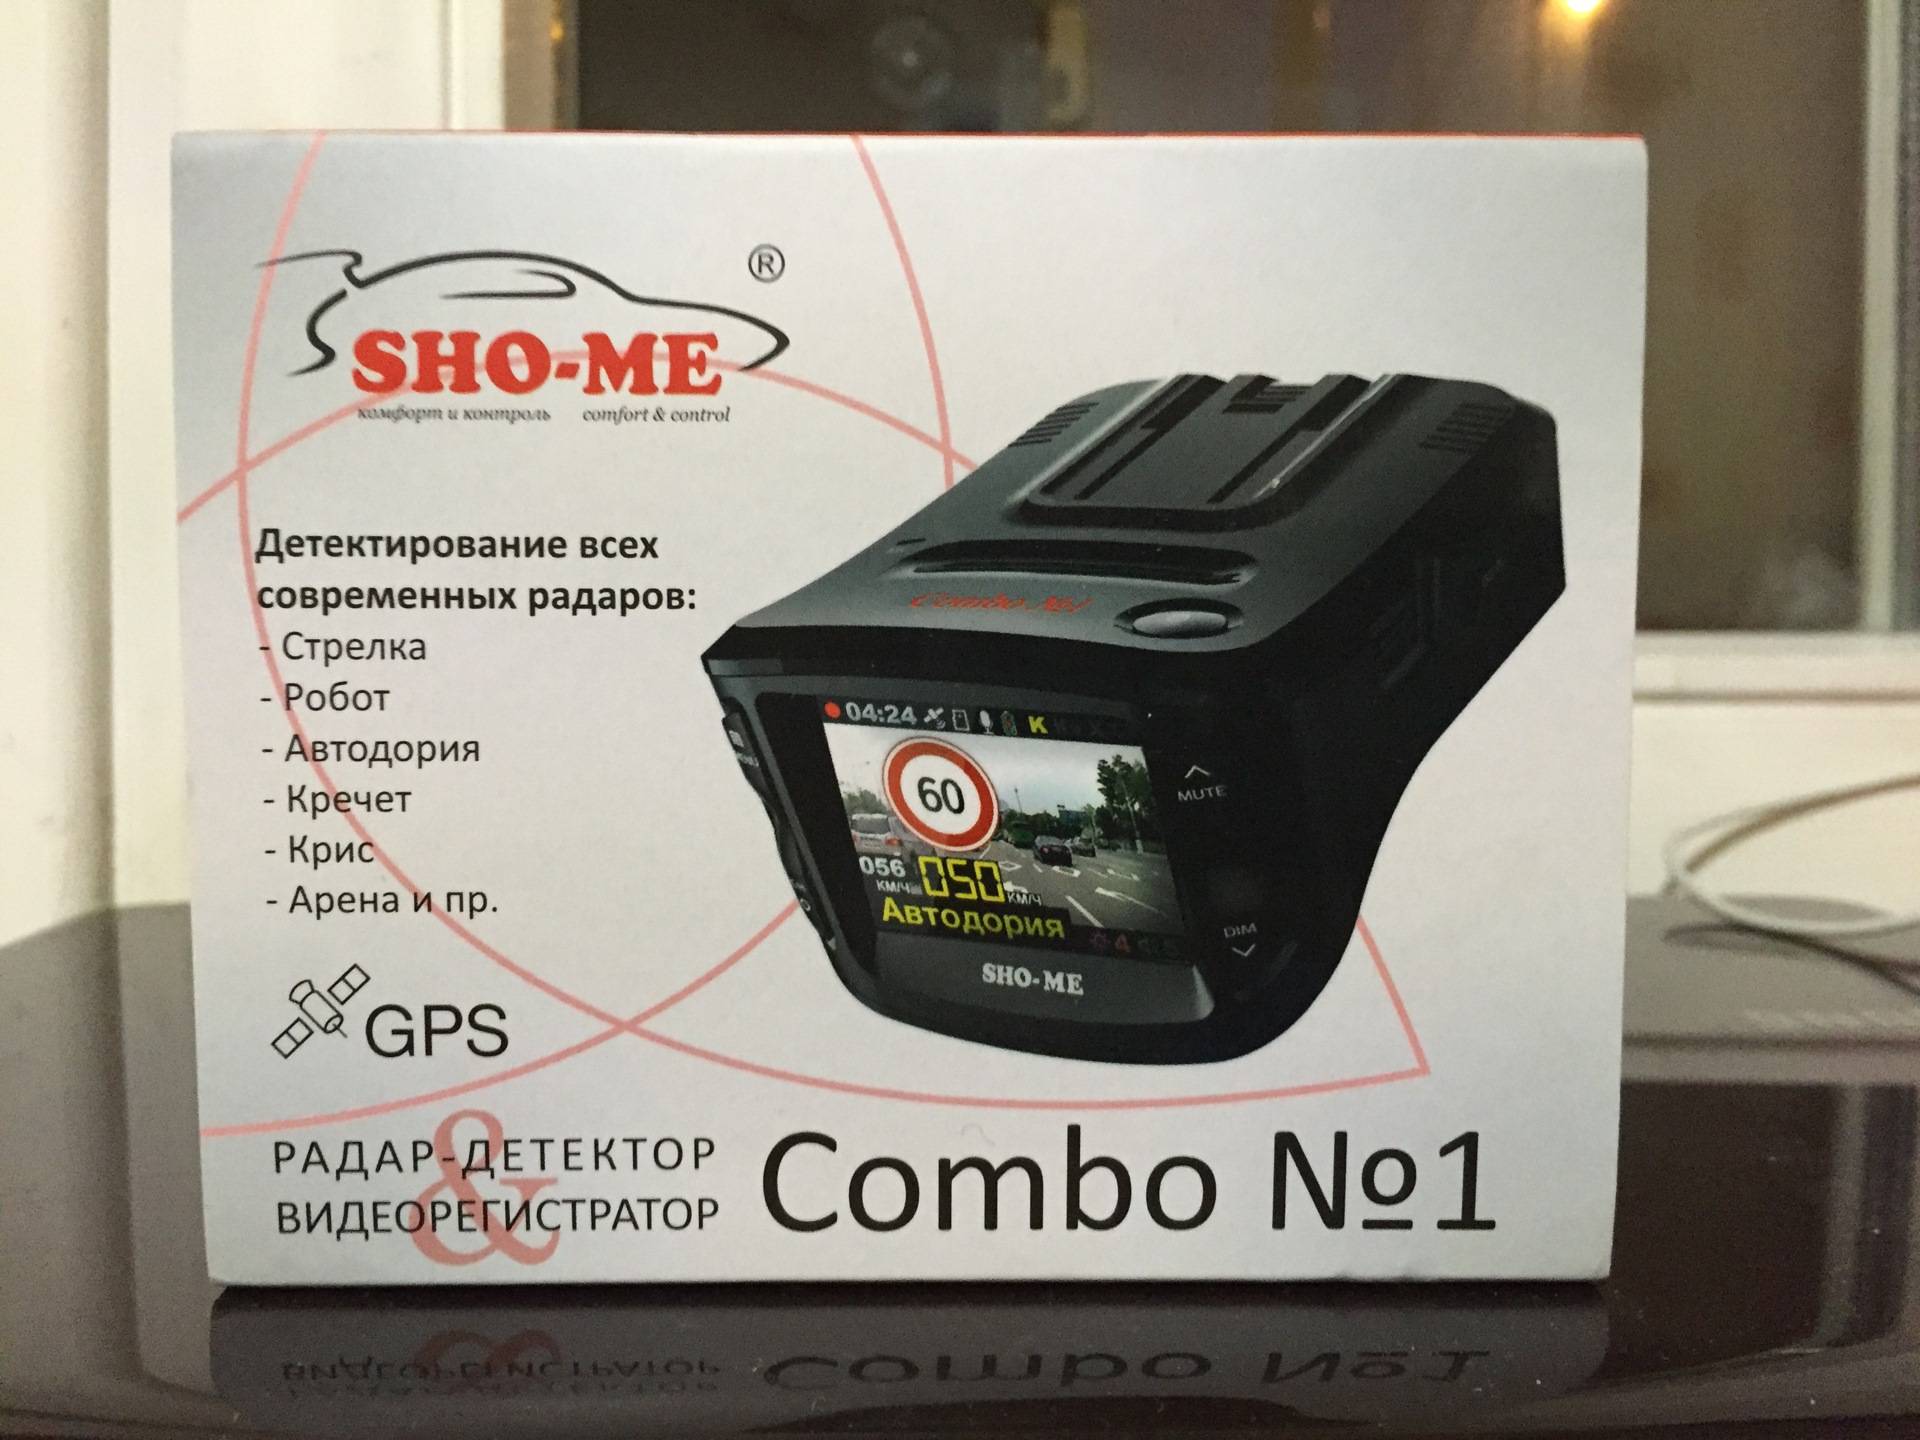 T me combo dm. Sho-me Combo №1. Sho-me Combo №1 Signature. Sho-me Combo Note MSTAR. Sho-me Combo Mini.